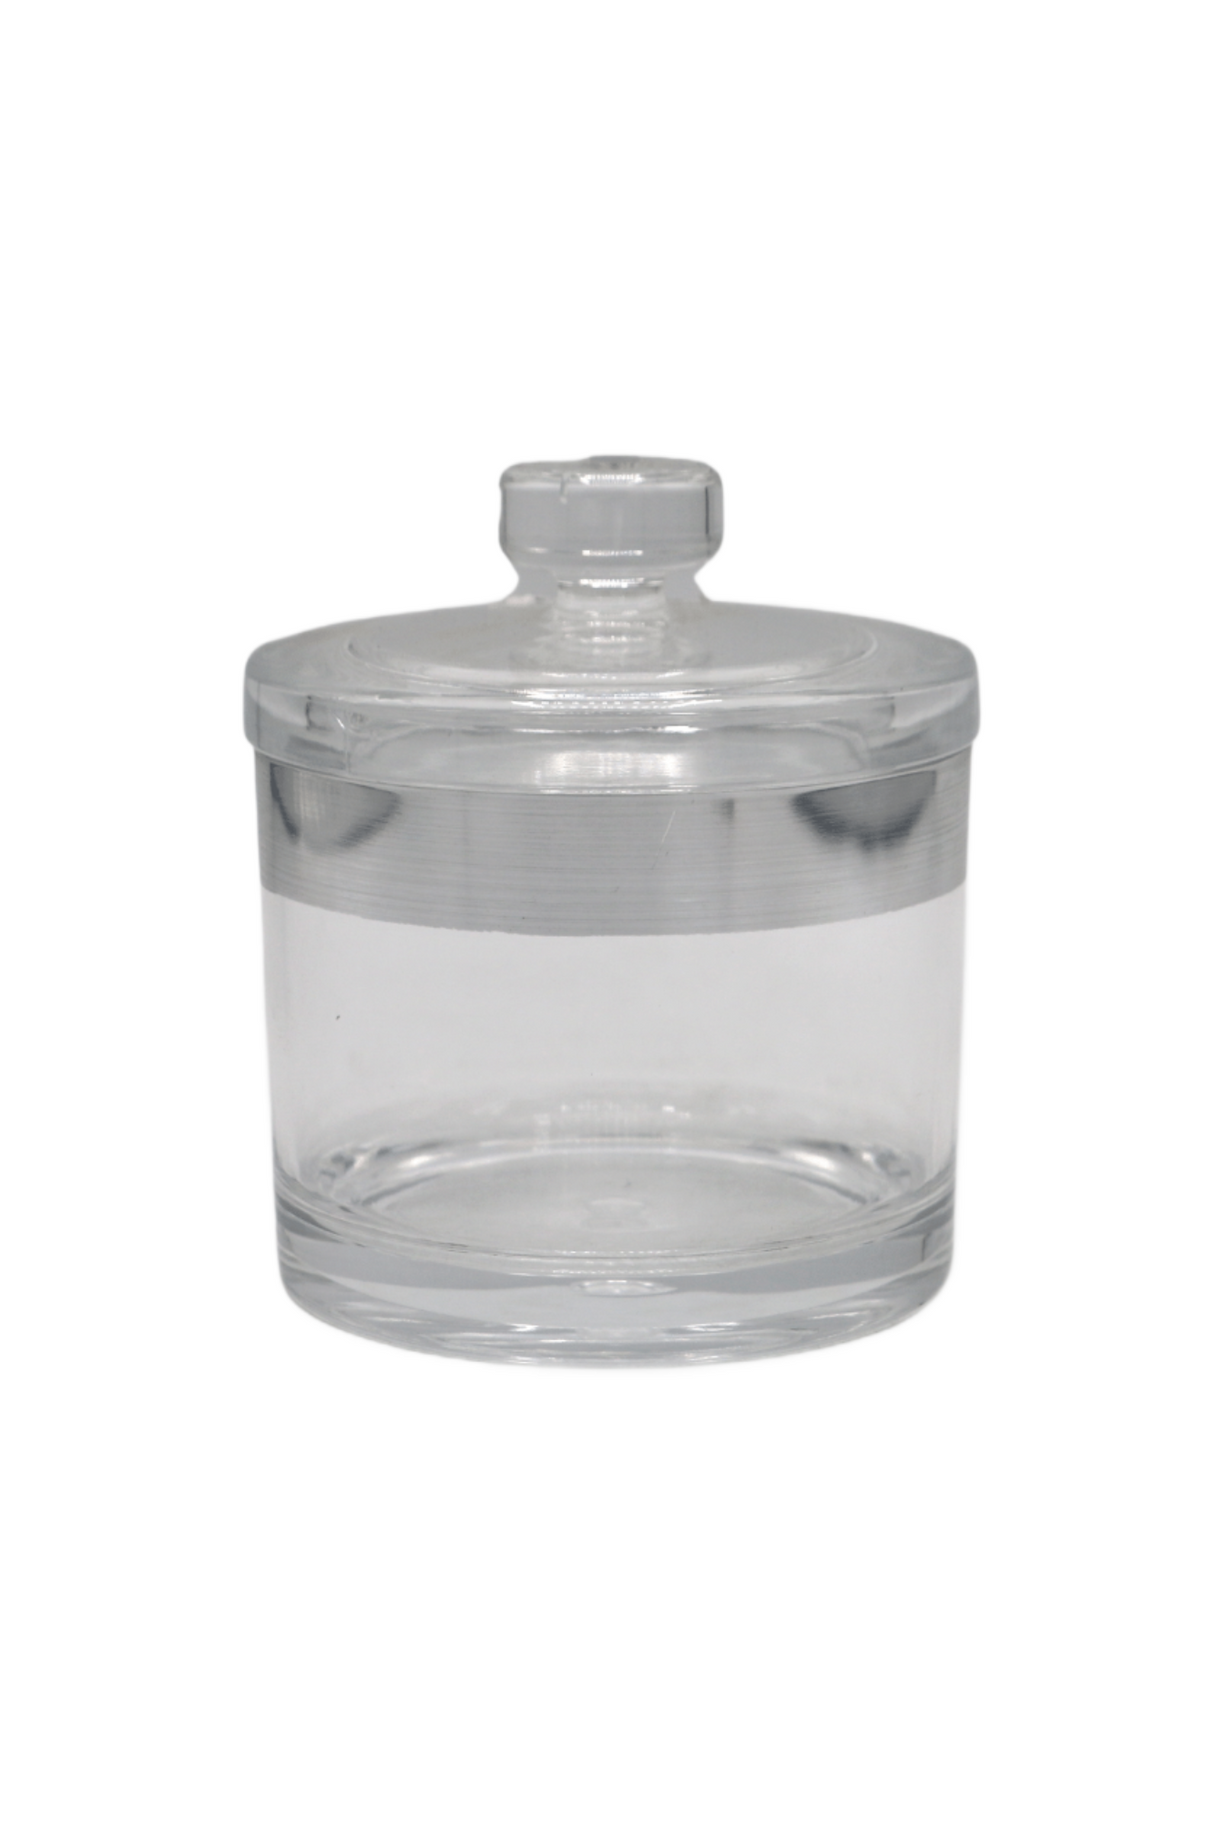 acrylic jar s 4269 china